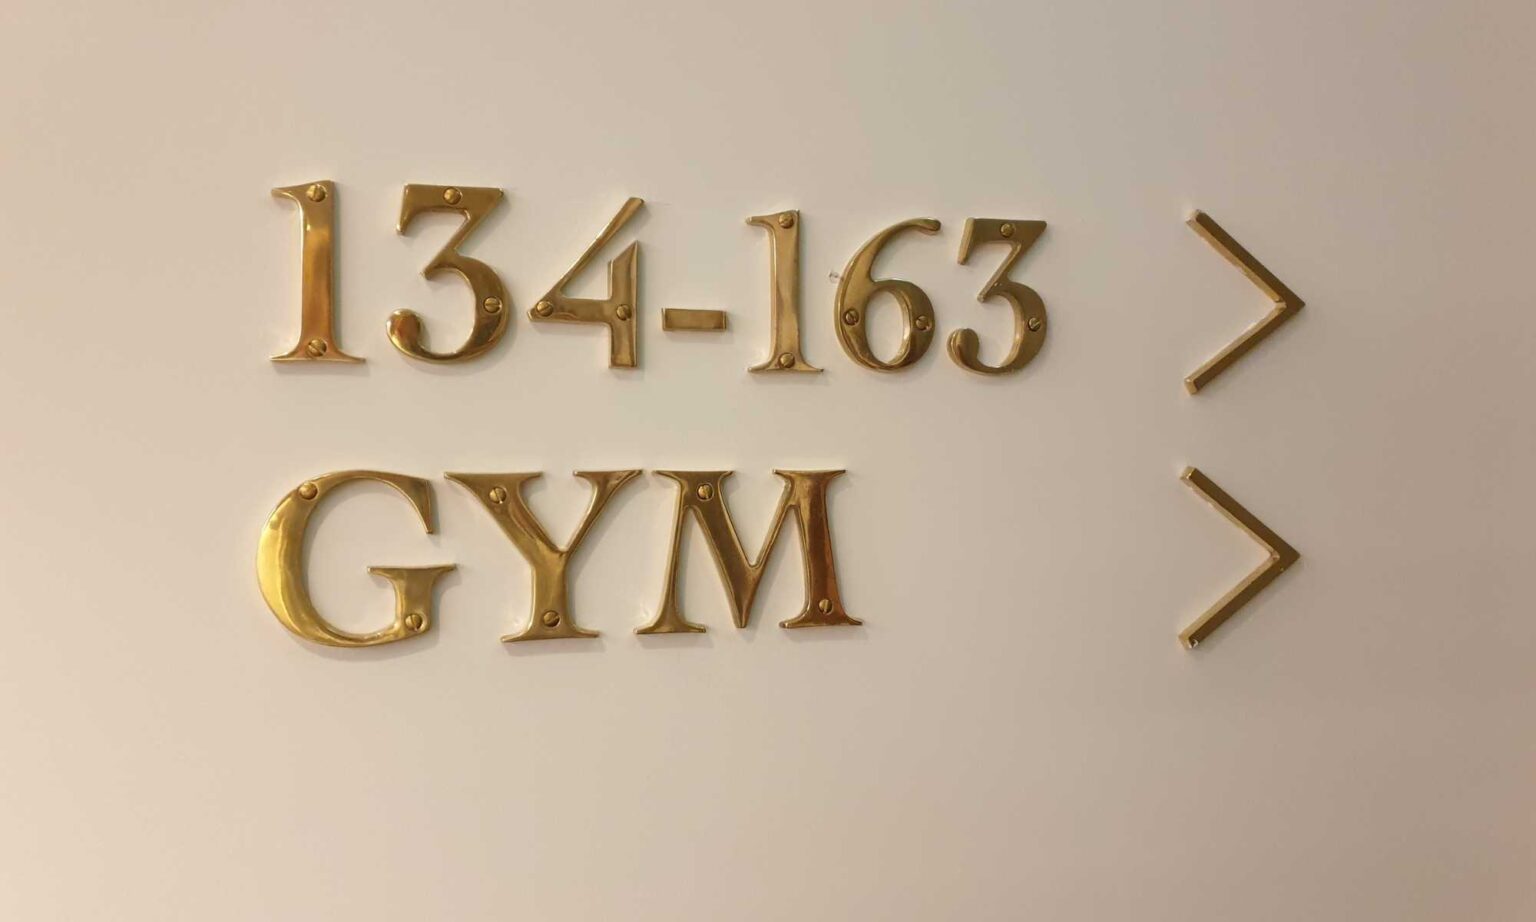 voco The Hague gym